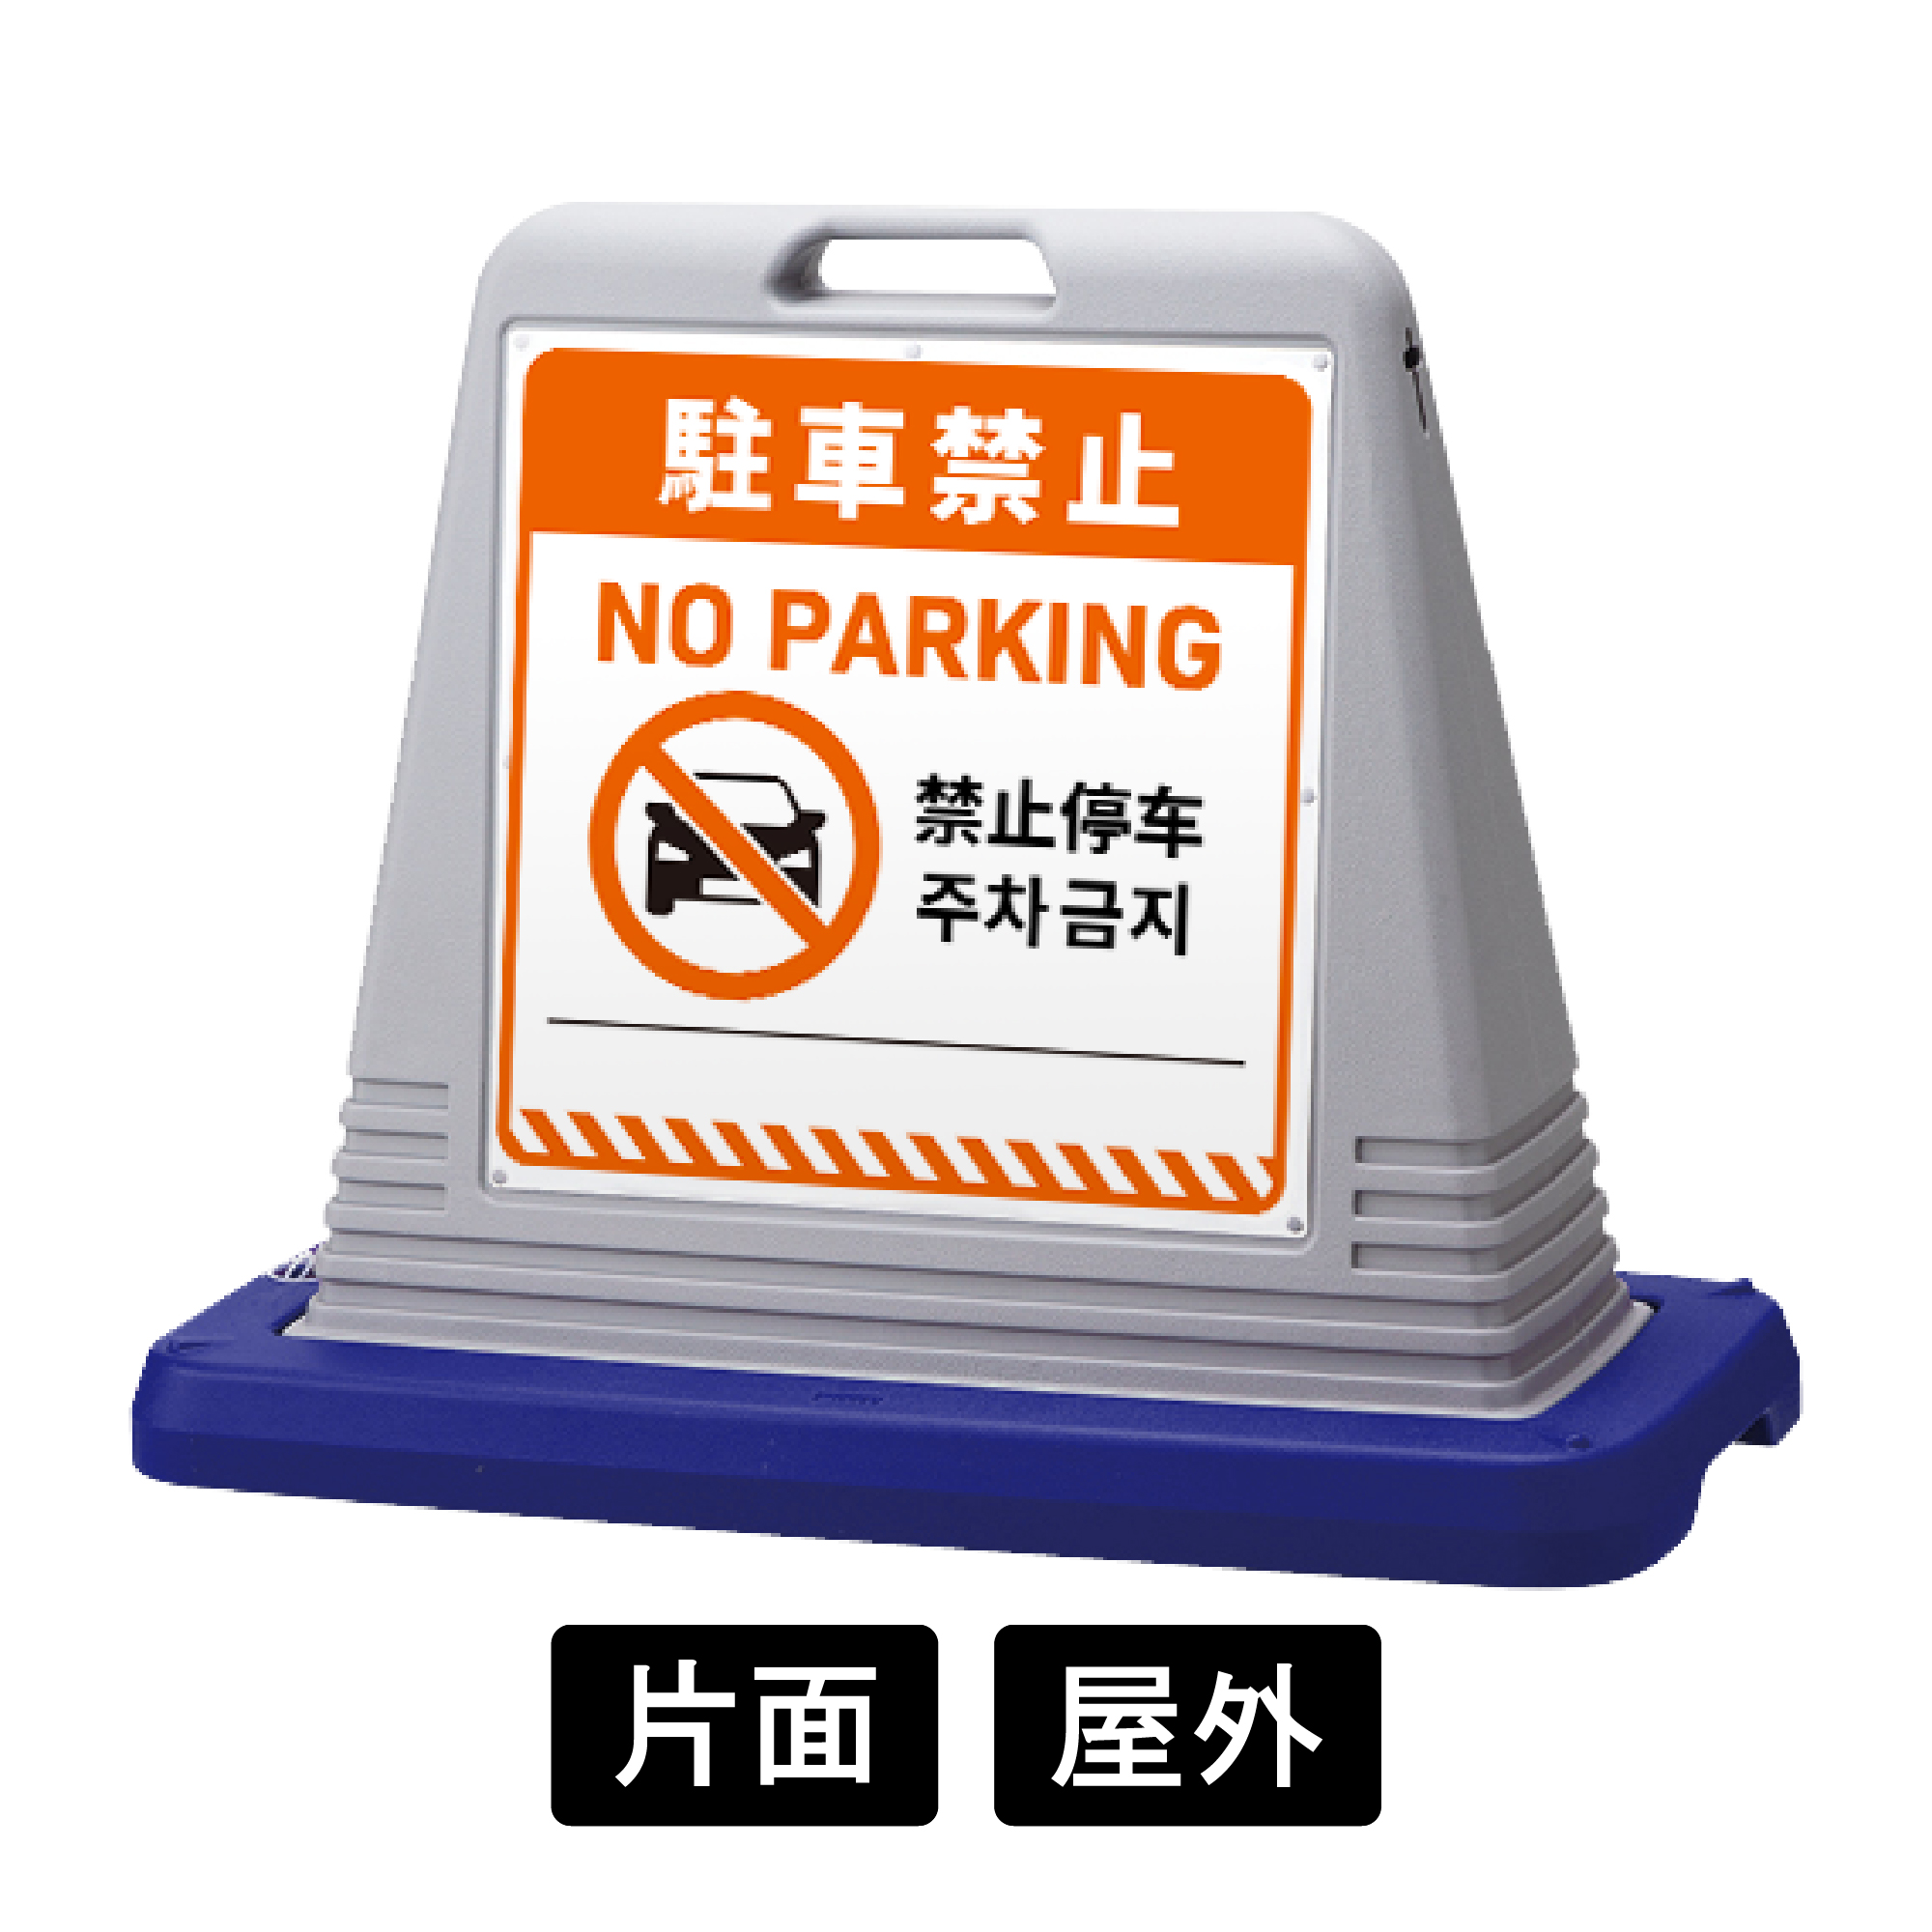 サインキューブ 「駐車禁止」 片面表示 グレー SignWebオリジナル 多言語 ユニバーサルデザイン